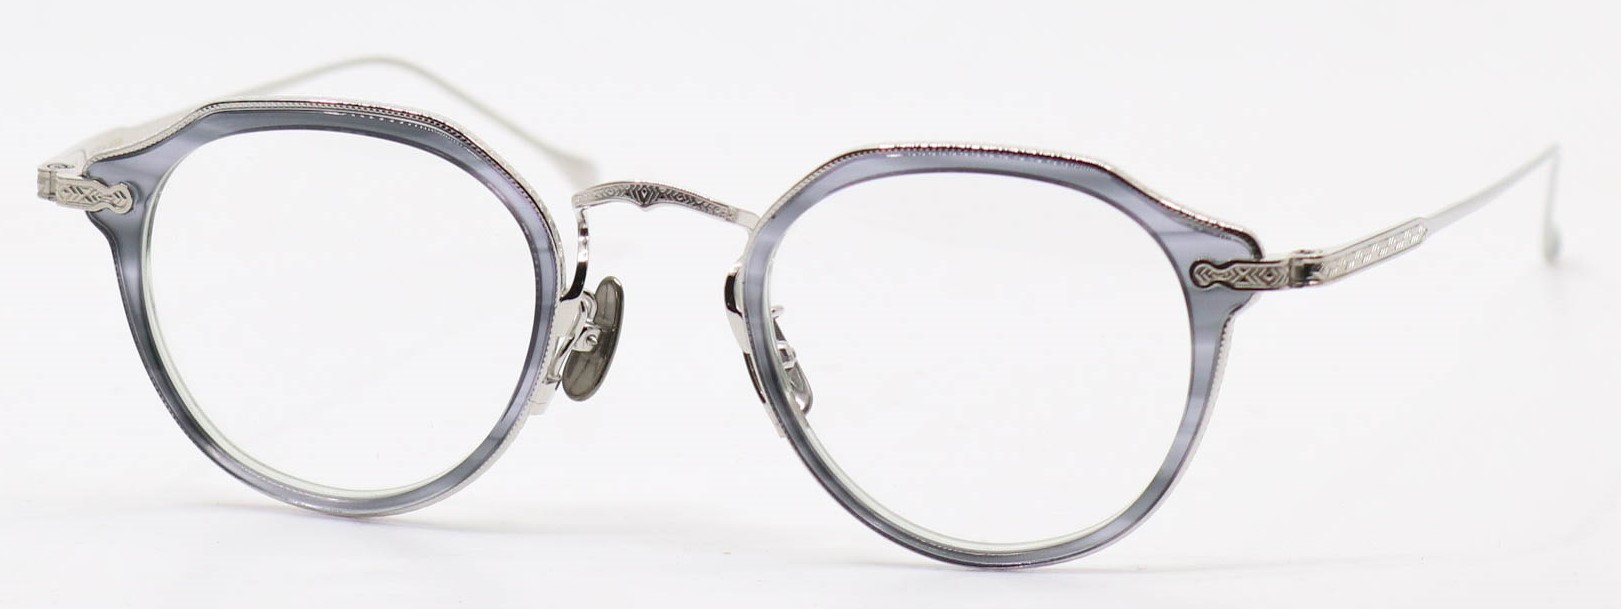 眼鏡のカラータイプC-4 GraySasa-LightGreen/Silver